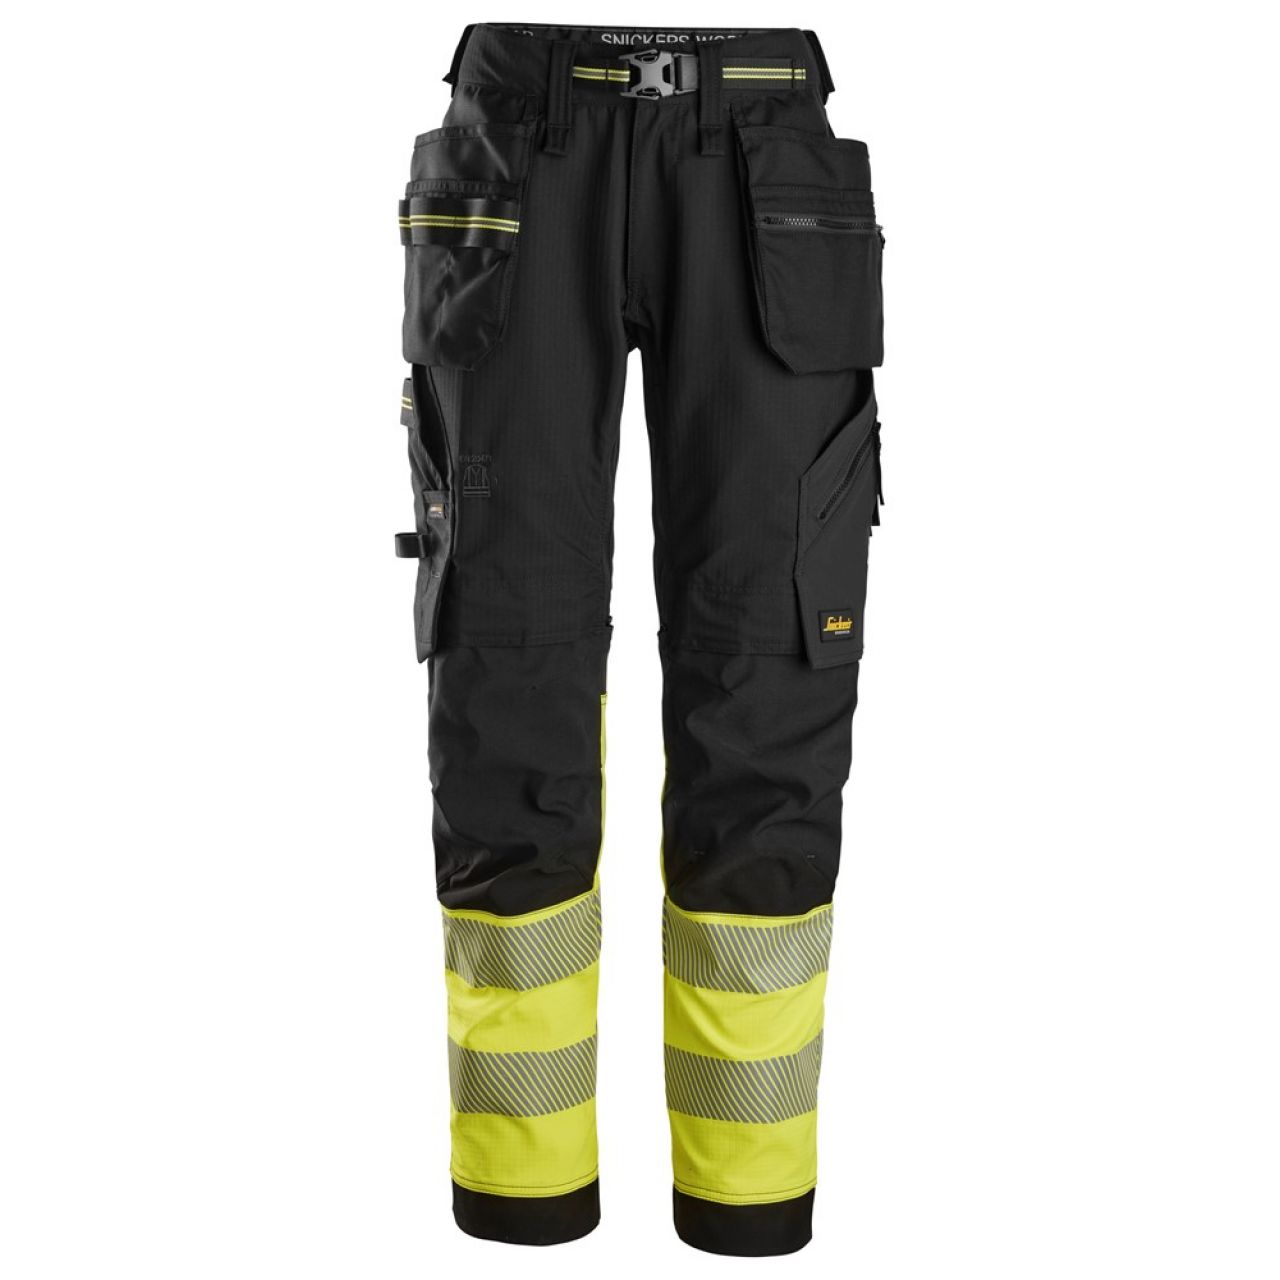 6934 Pantalones largos de trabajo elásticos de alta visibilidad clase 1 con bolsillos flotantes negro-amarillo talla 112